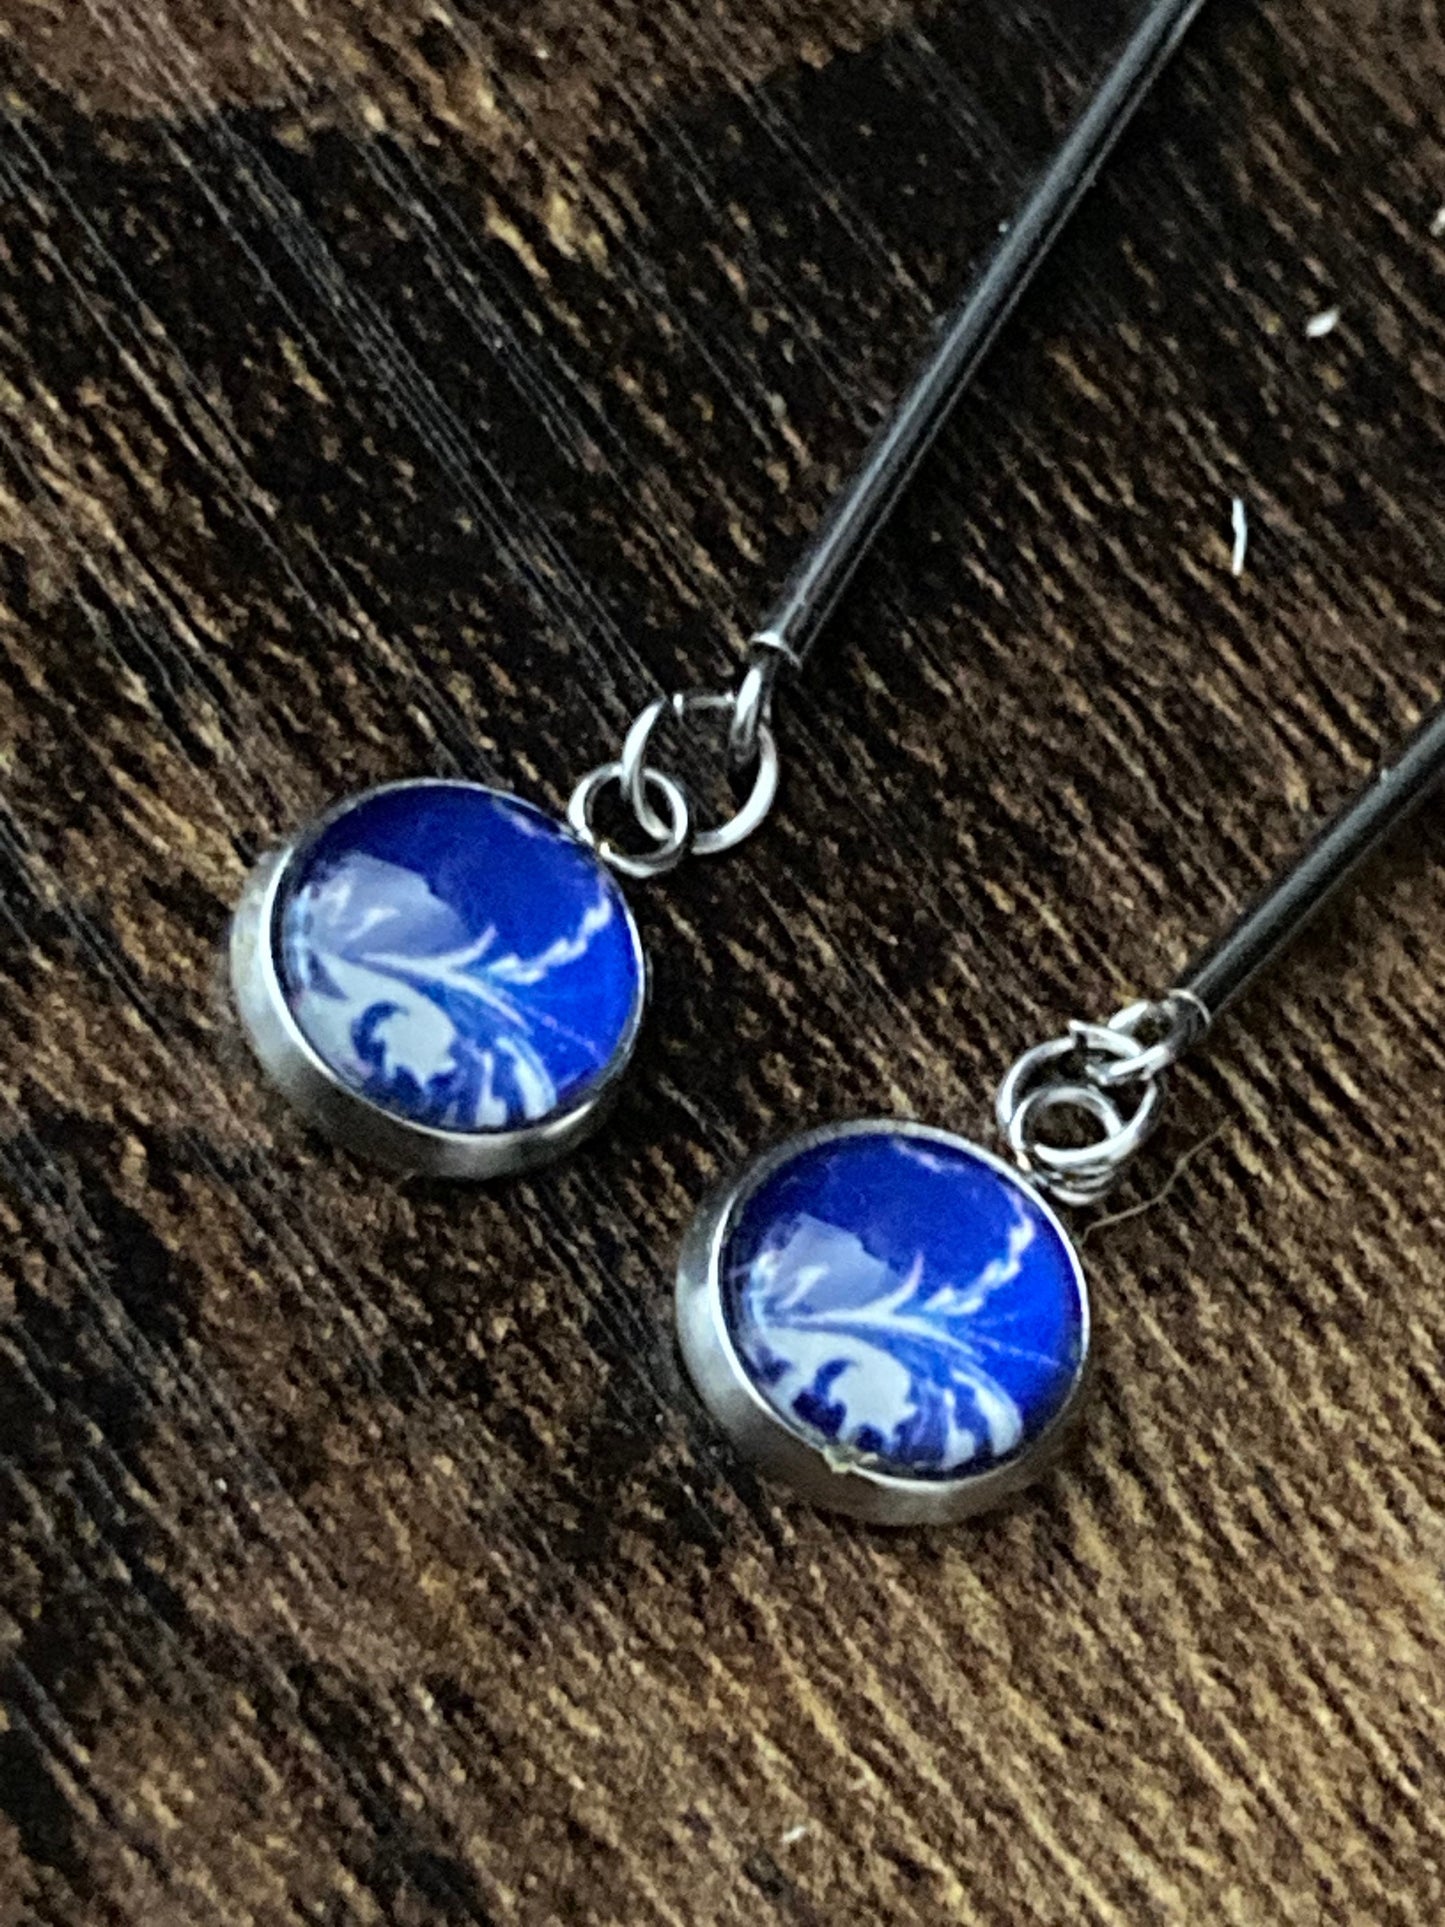 oriental blue white Amari style dangly drop earrings pierced ears